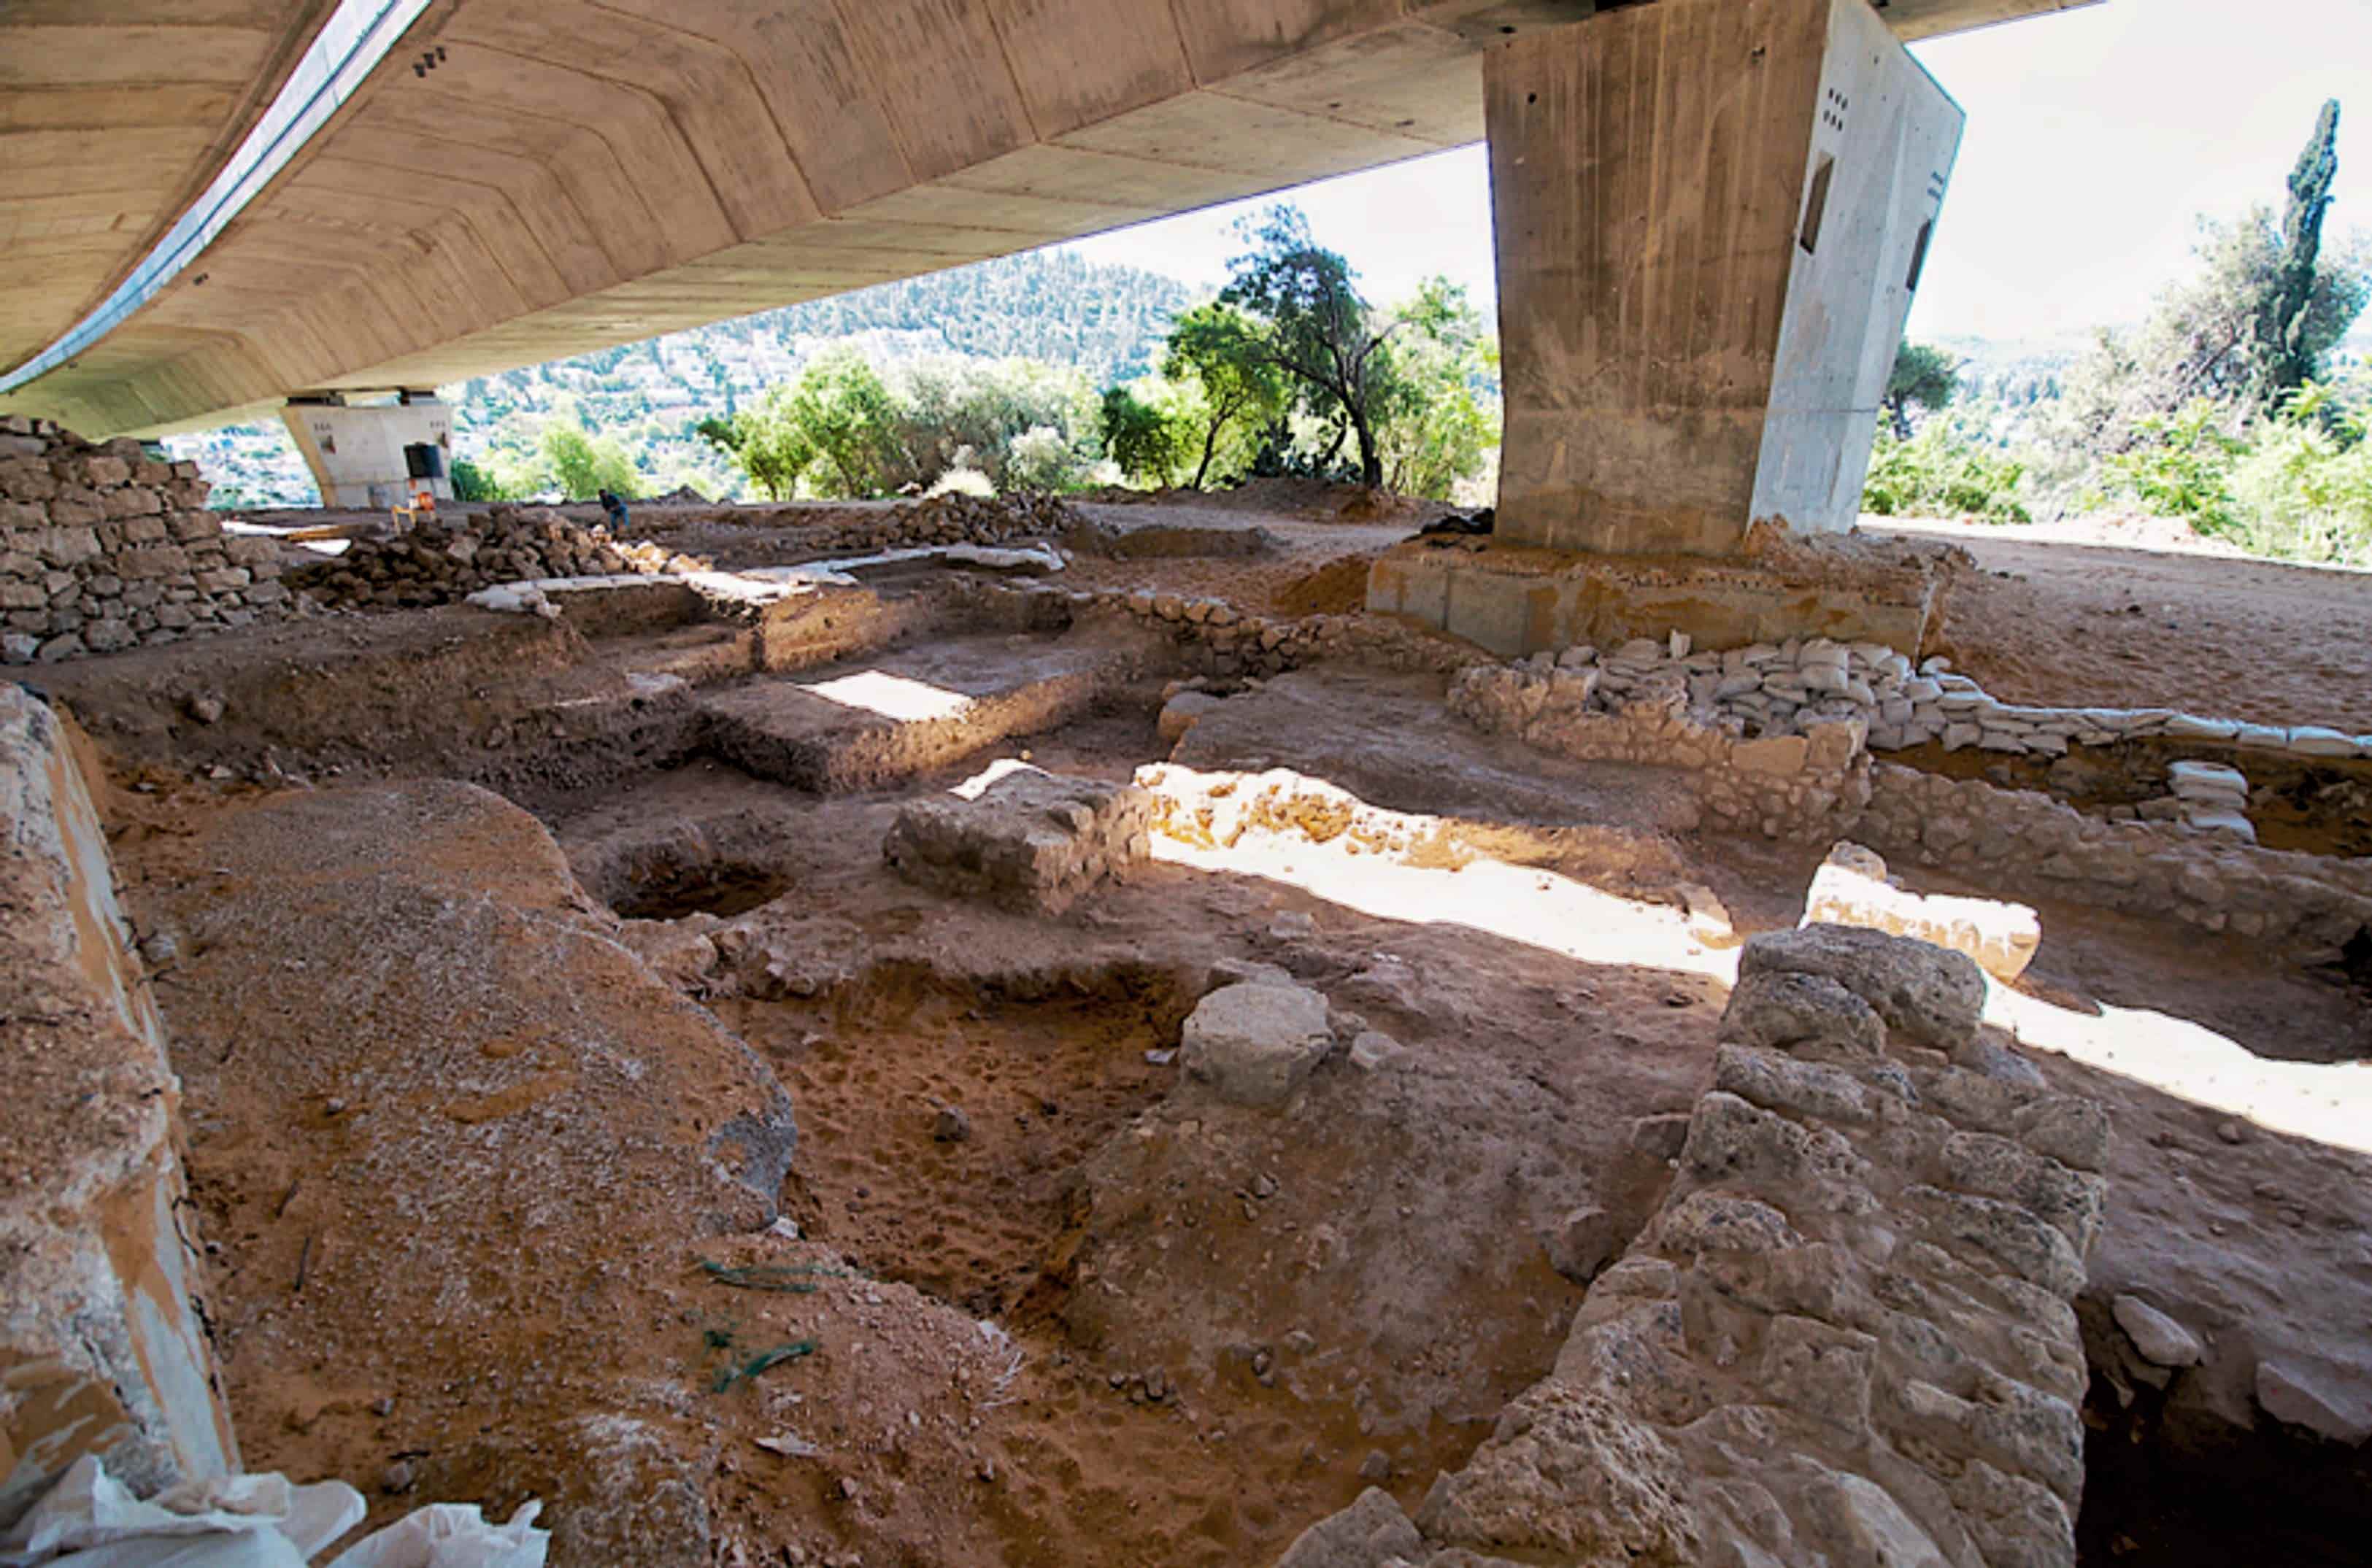 9,000 éves Jeruzsálem közelében található a 2. őskori település "ősrobbanása"